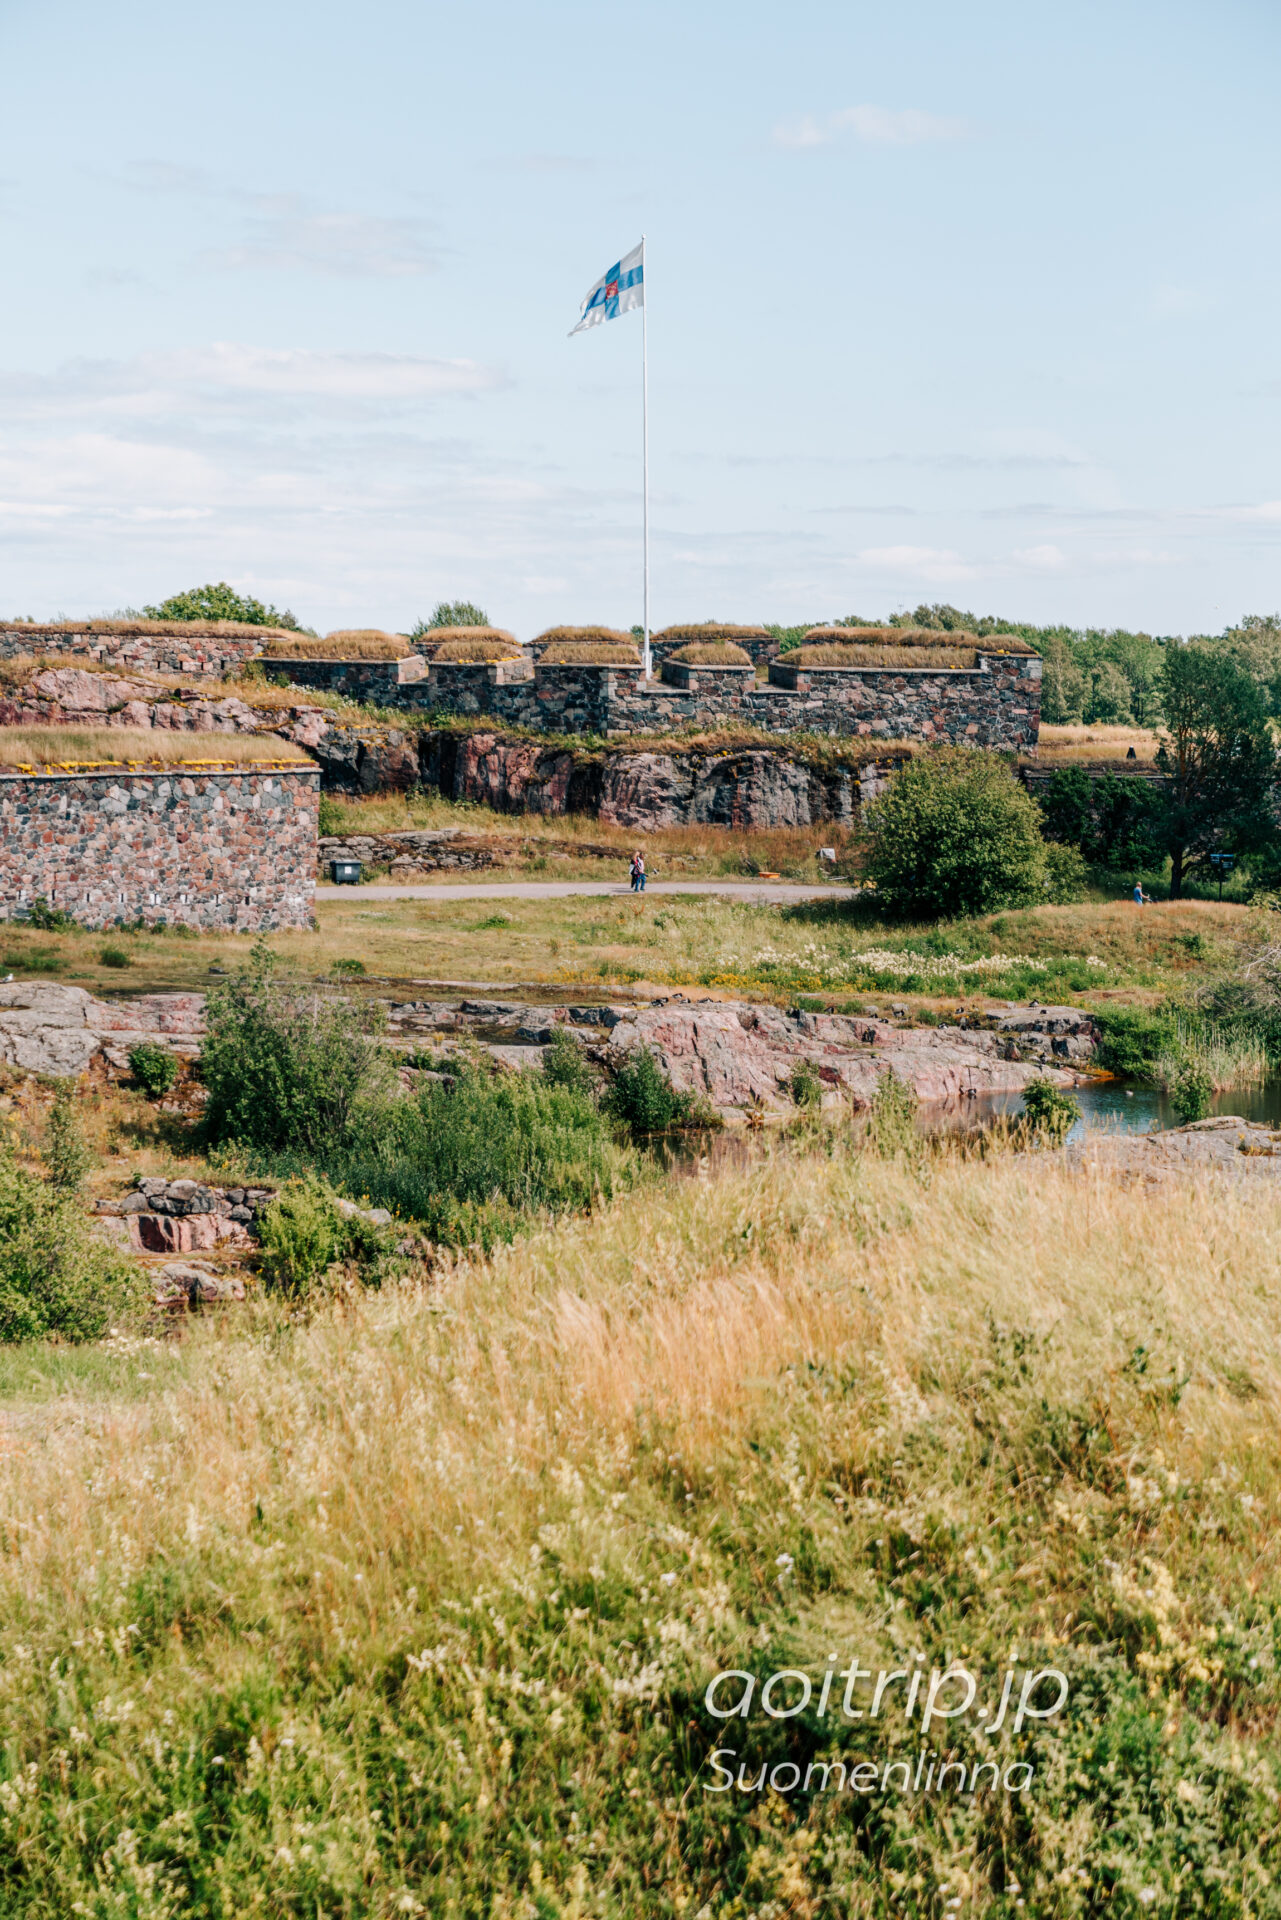 スオメンリンナの要塞 Suomenlinna